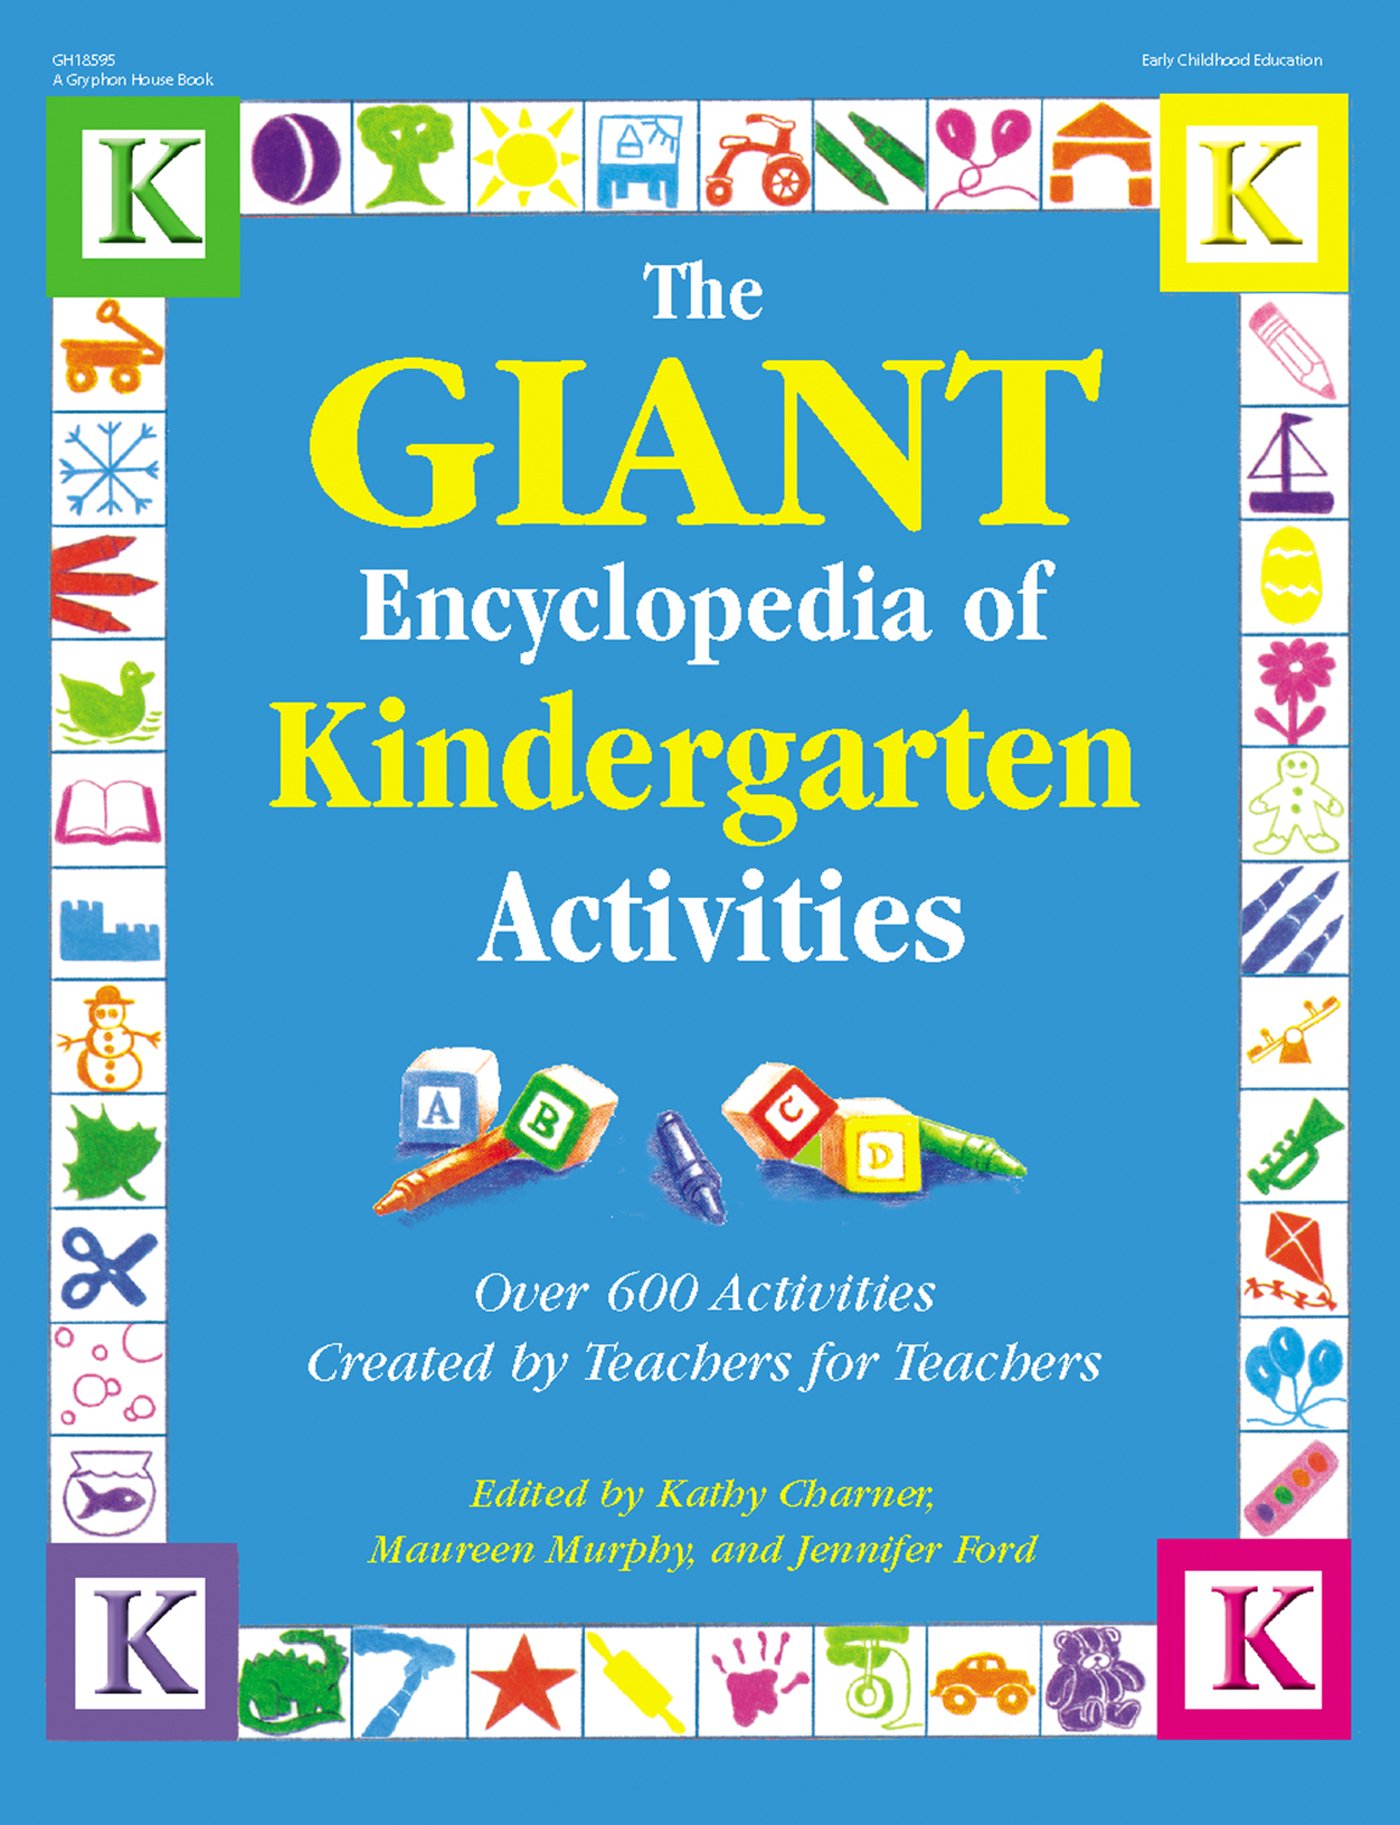 The GIANT Encyclopedia of Kindergarten Activities